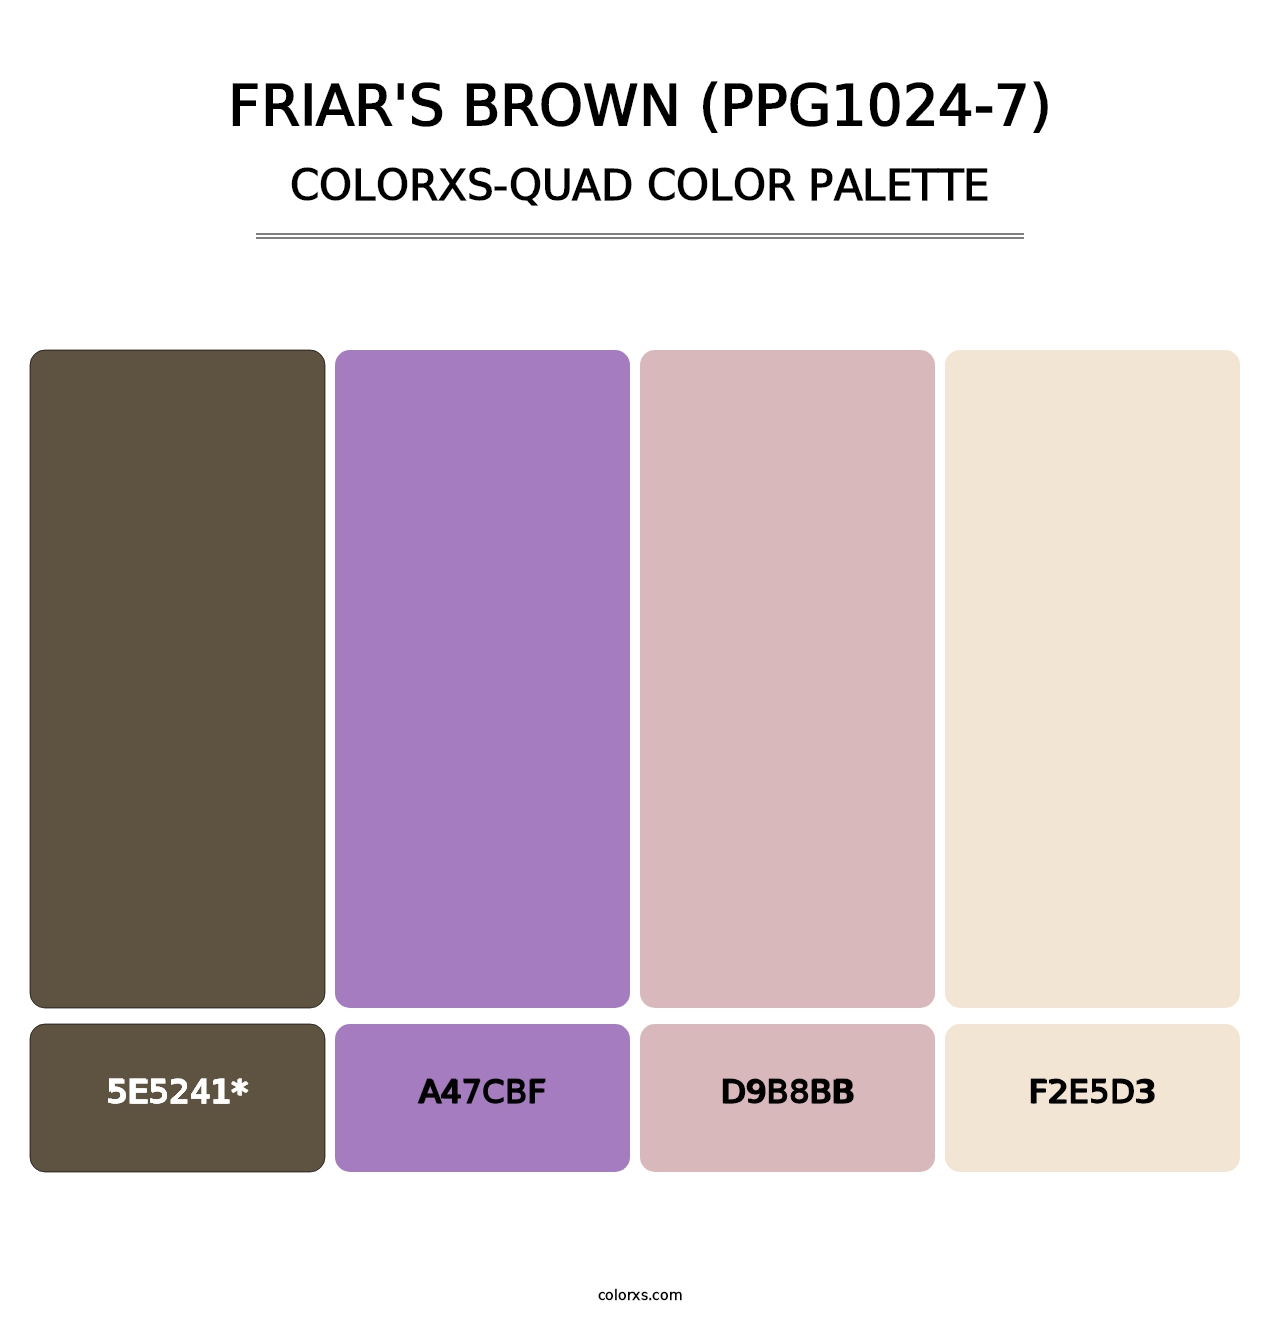 Friar's Brown (PPG1024-7) - Colorxs Quad Palette